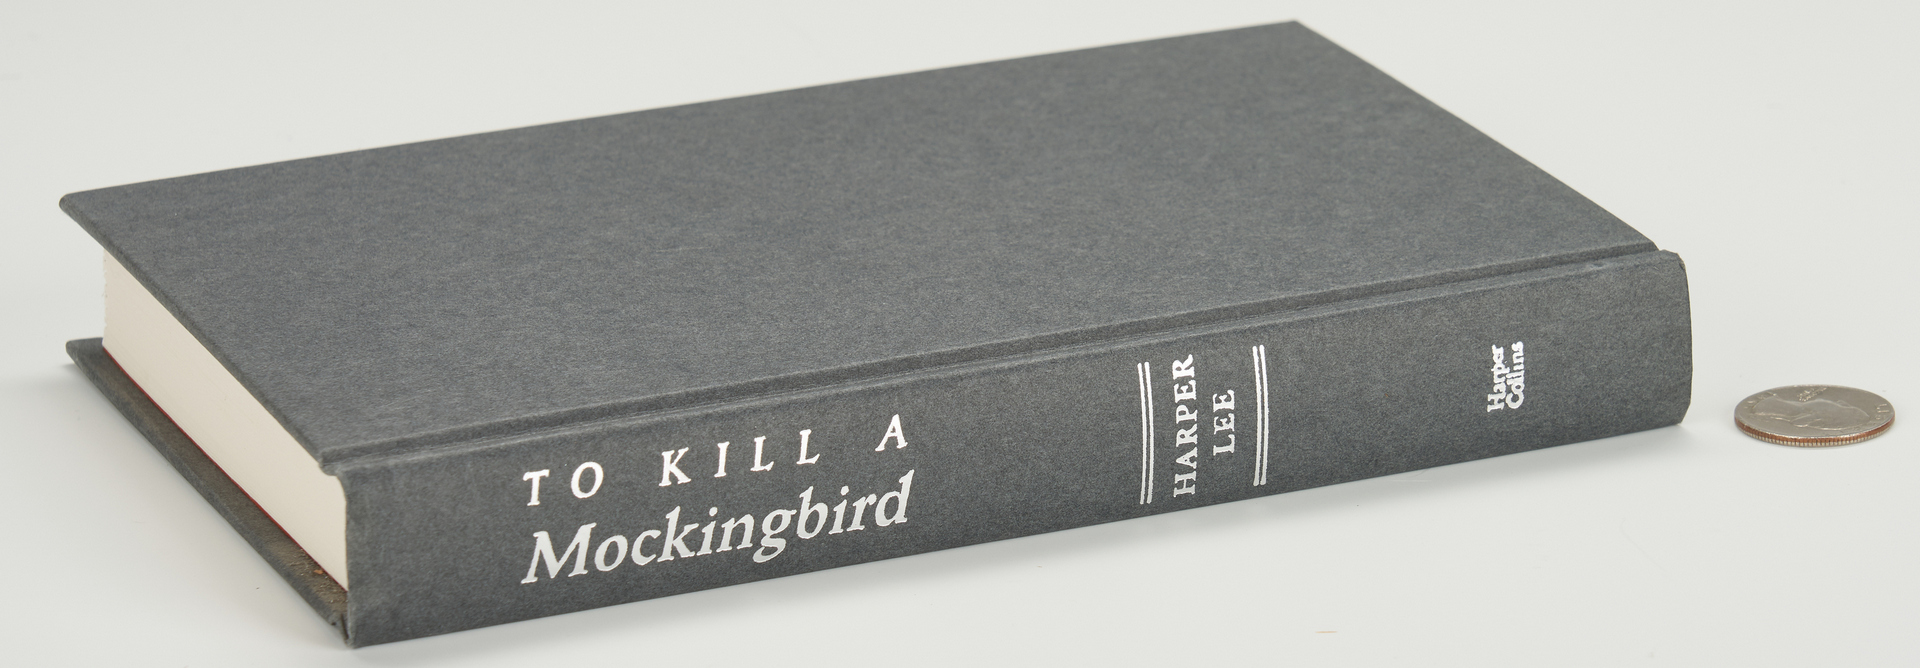 Lot 636: Signed Copy of To Kill A Mockingbird